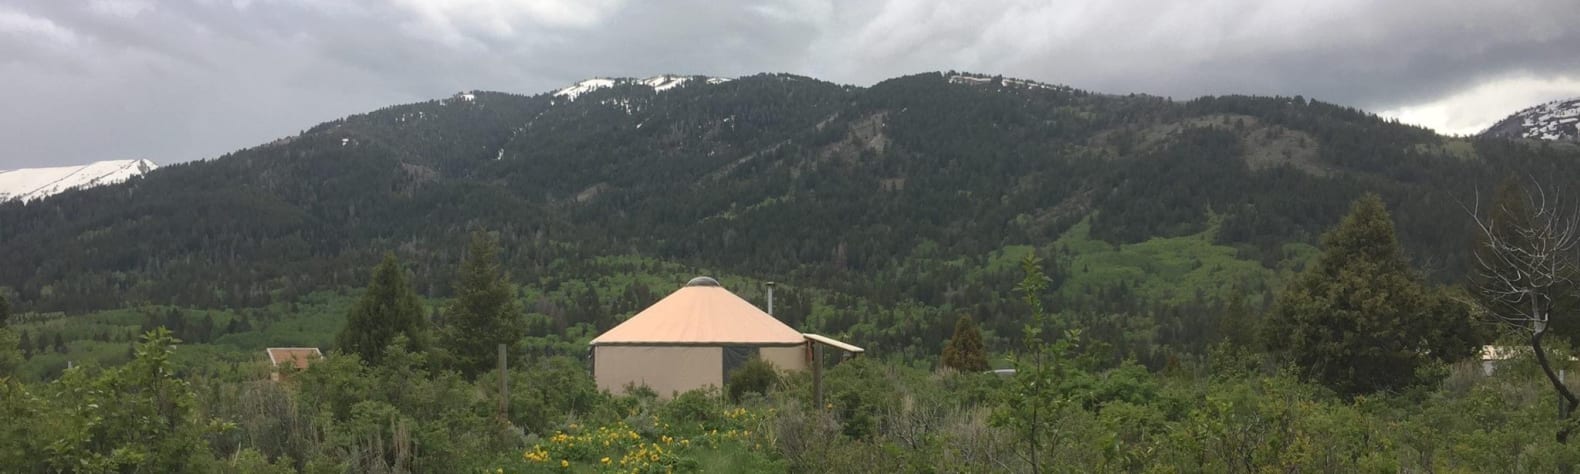 Mountain View Glamping Yurt